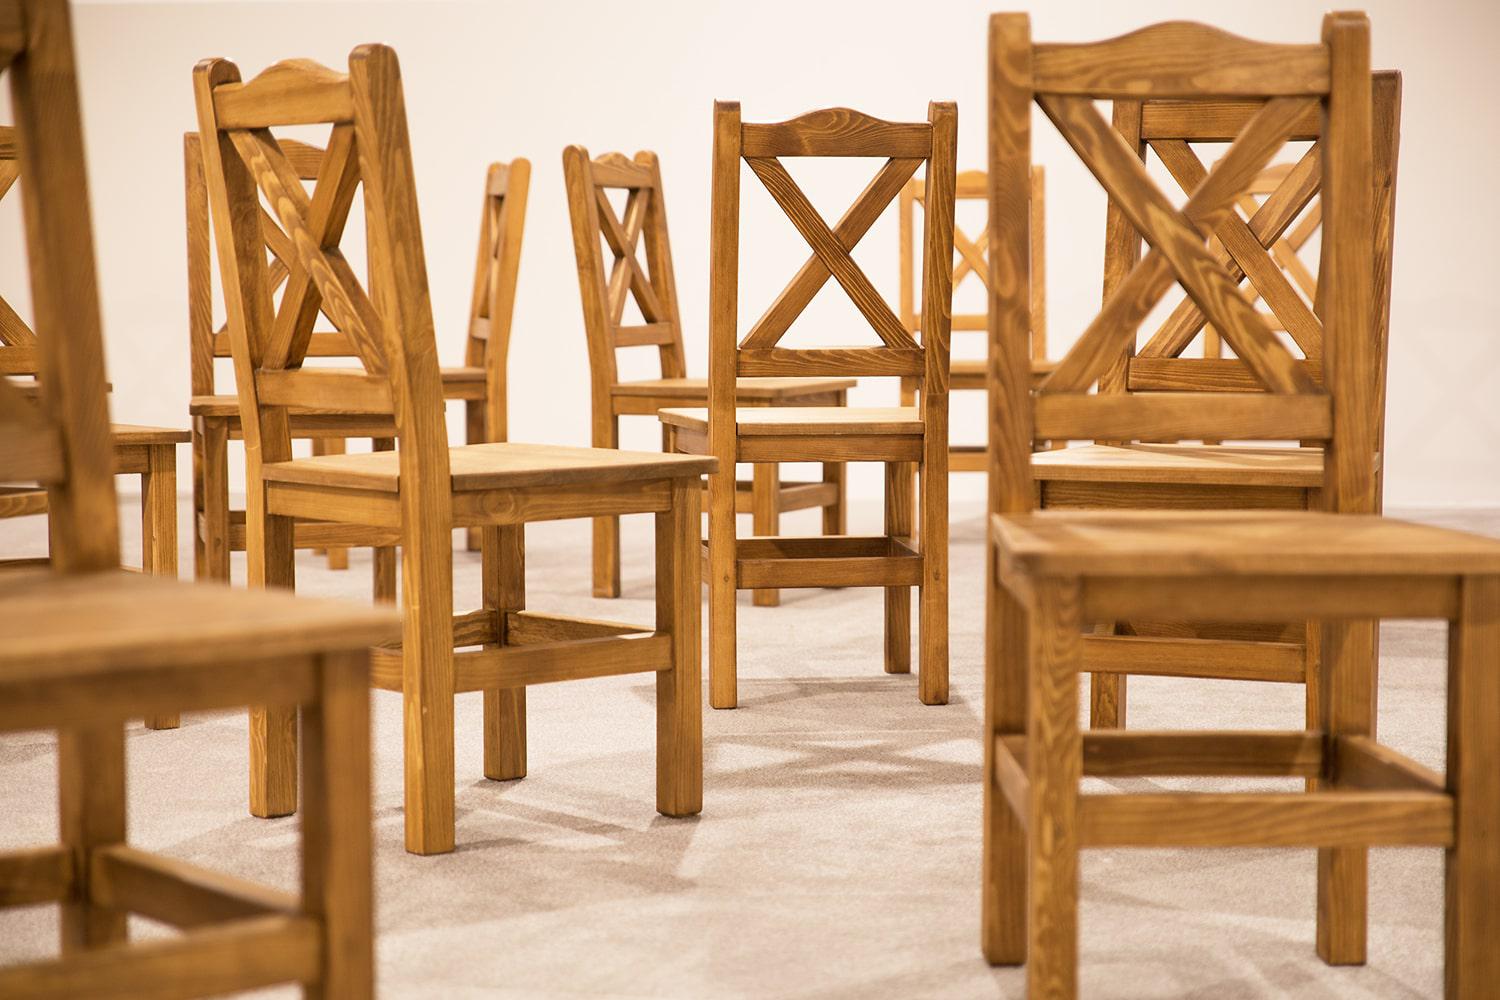 drewniane krzesla do rtestauracji